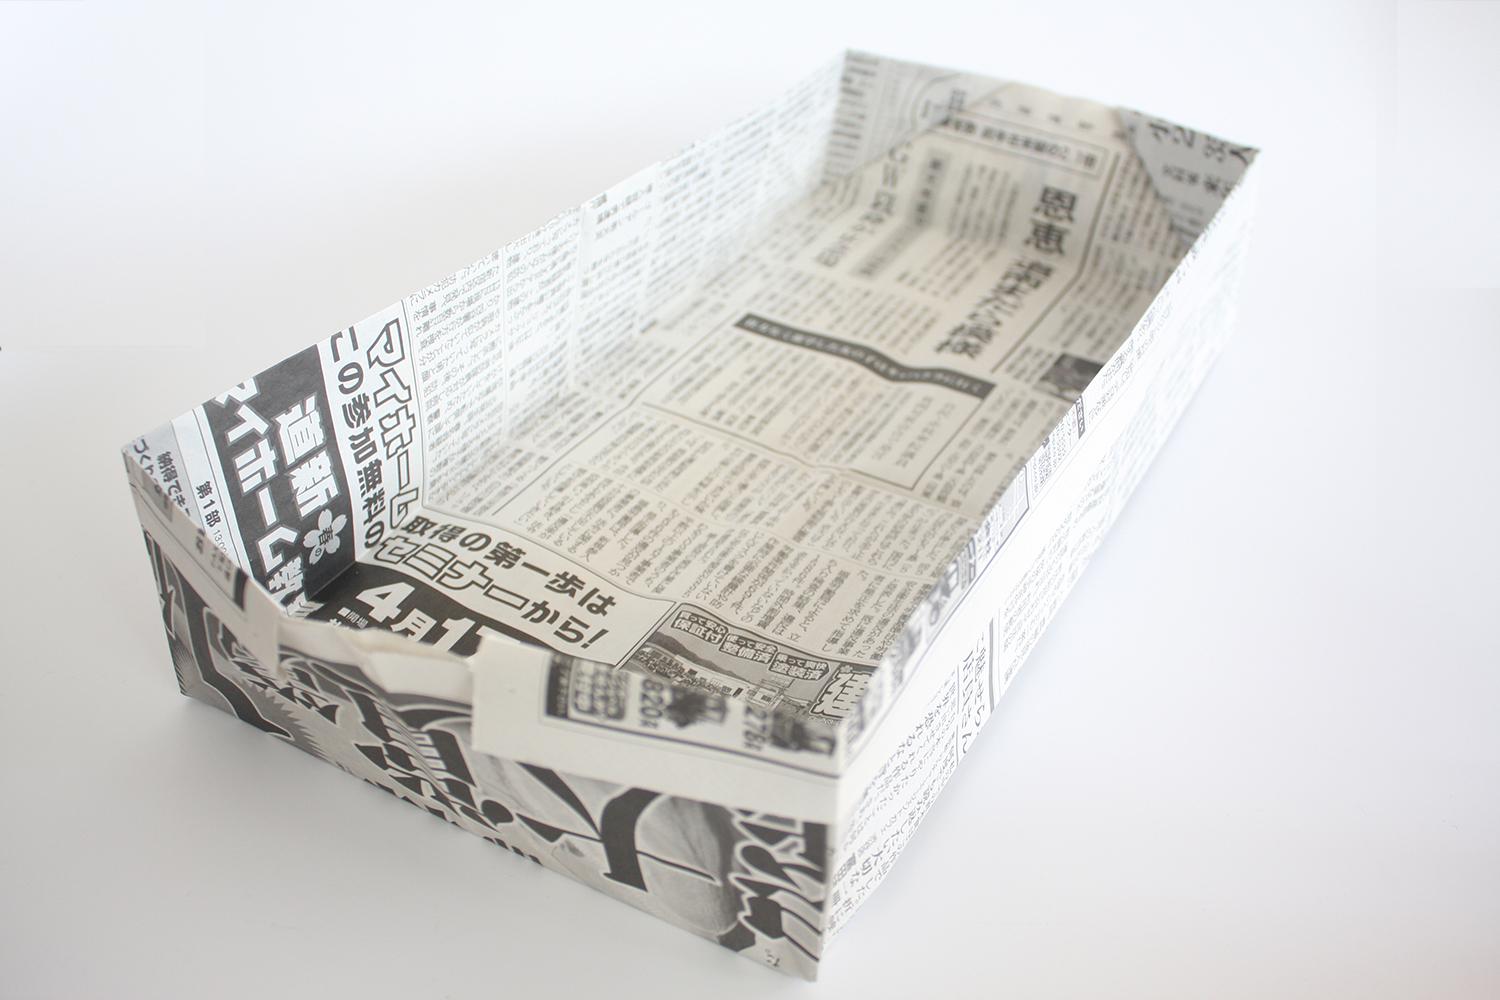 用紙で作る洋形７号 封筒 展開図 型紙 無料ダウンロード 印刷 折り紙japan